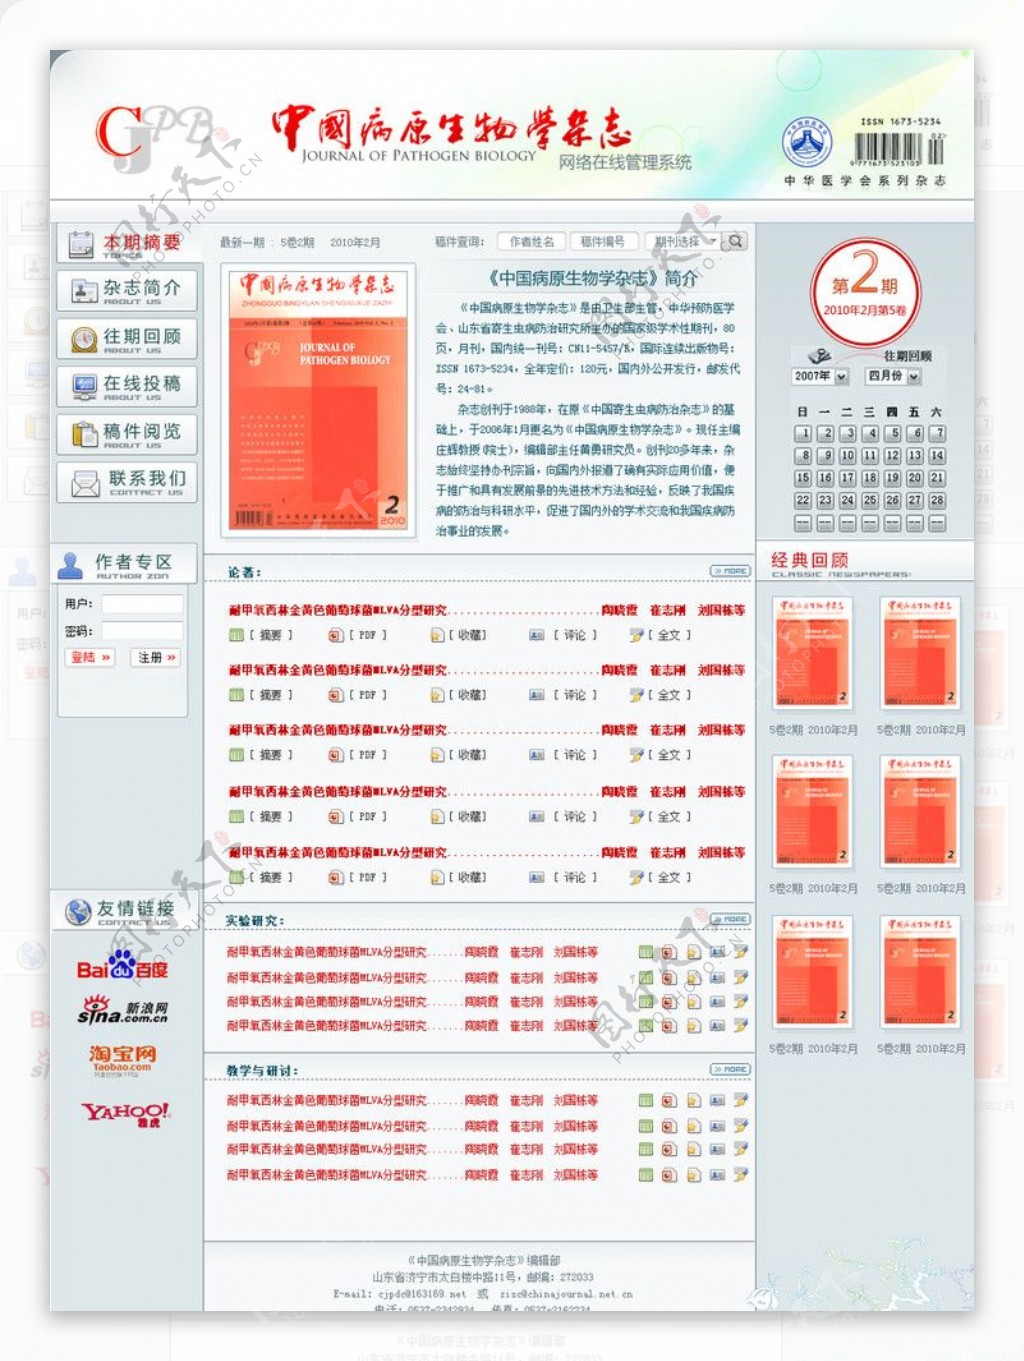 中国病原生物学杂志网站首页效果图图片